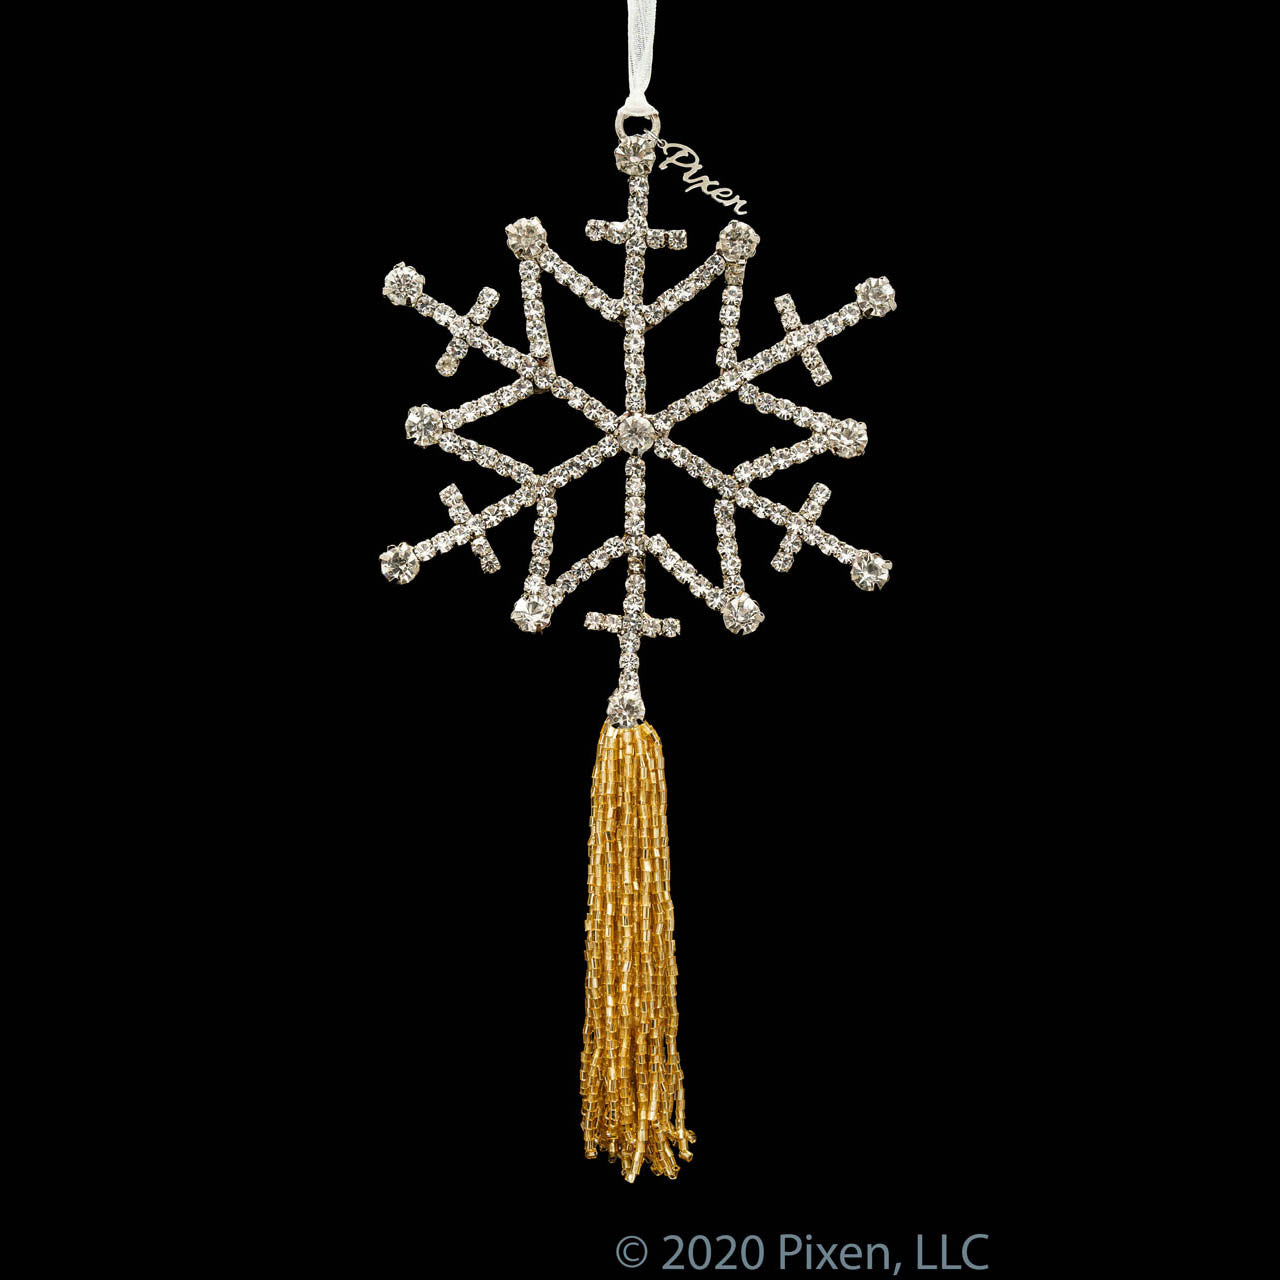 Glow Snowflake Christmas Ornament by Pixen